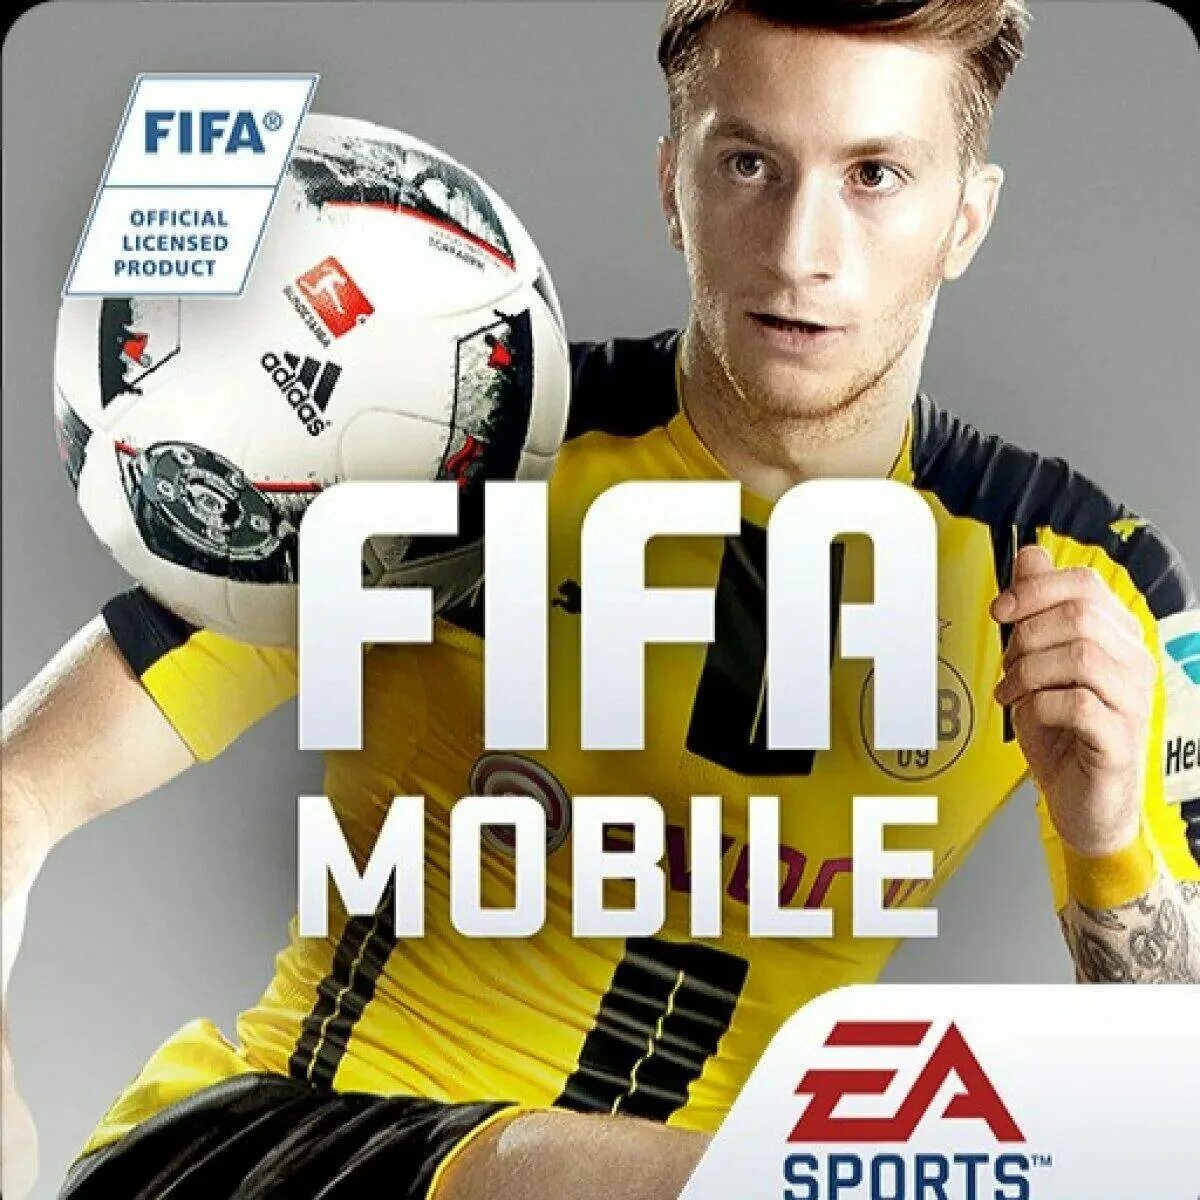 Fifa mobile последняя версия. ФИФА мобайл. Фото ФИФА мобайл. ФИФА мобайл 17. FIFA mobile обложка.